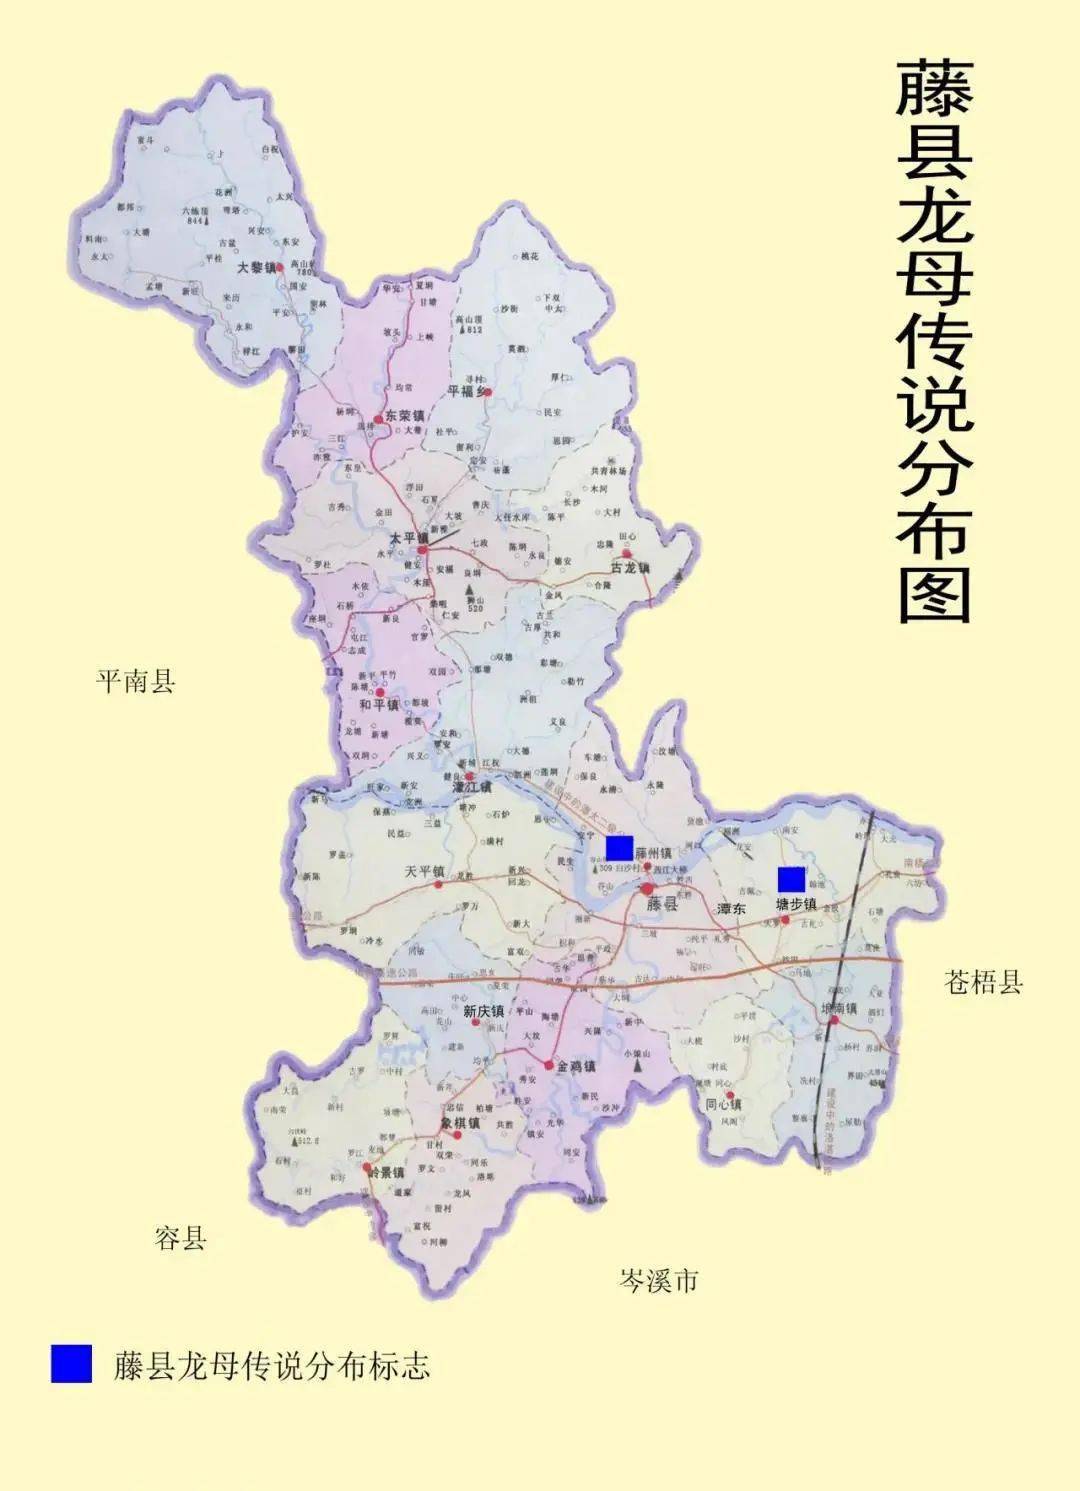 中国广西藤县乡镇地图图片